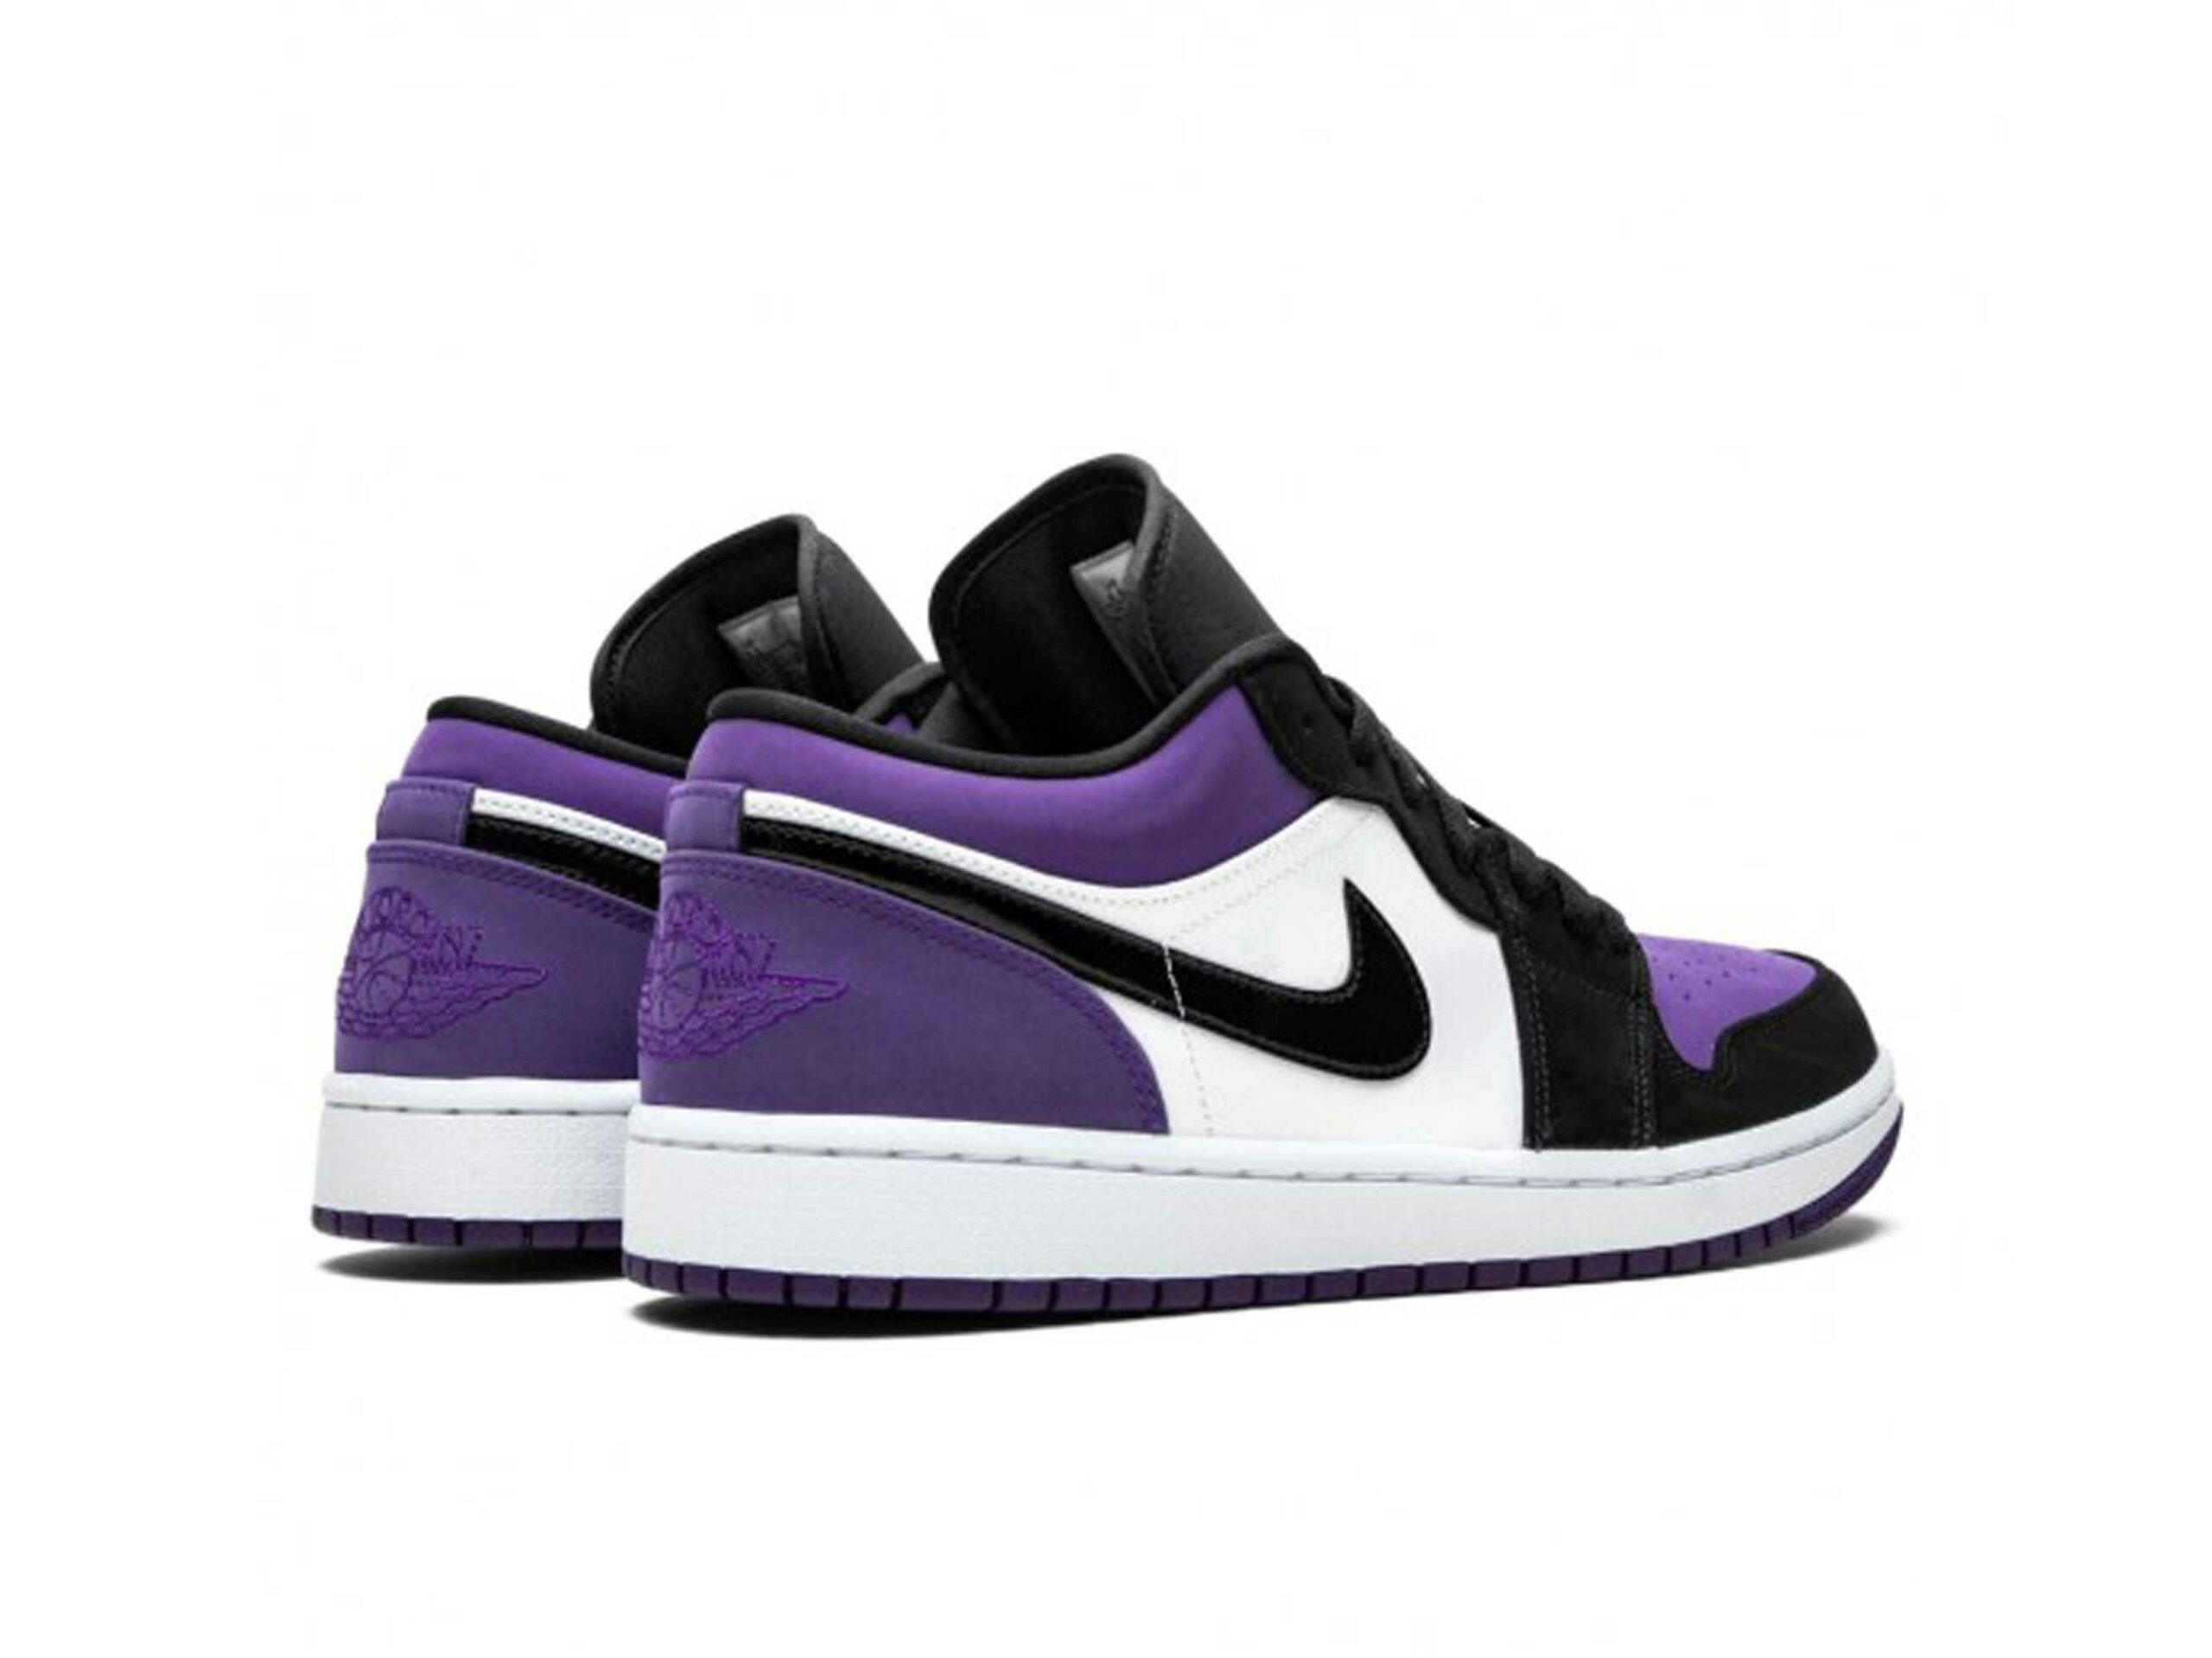 Jordan 1 low оригинал. Nike Air Jordan 1 Low Court Purple. Nike Air Jordan 1 Low Purple. Air Jordan 1 Low Court Purple. Nike Air Jordan 1 Low фиолетовые.